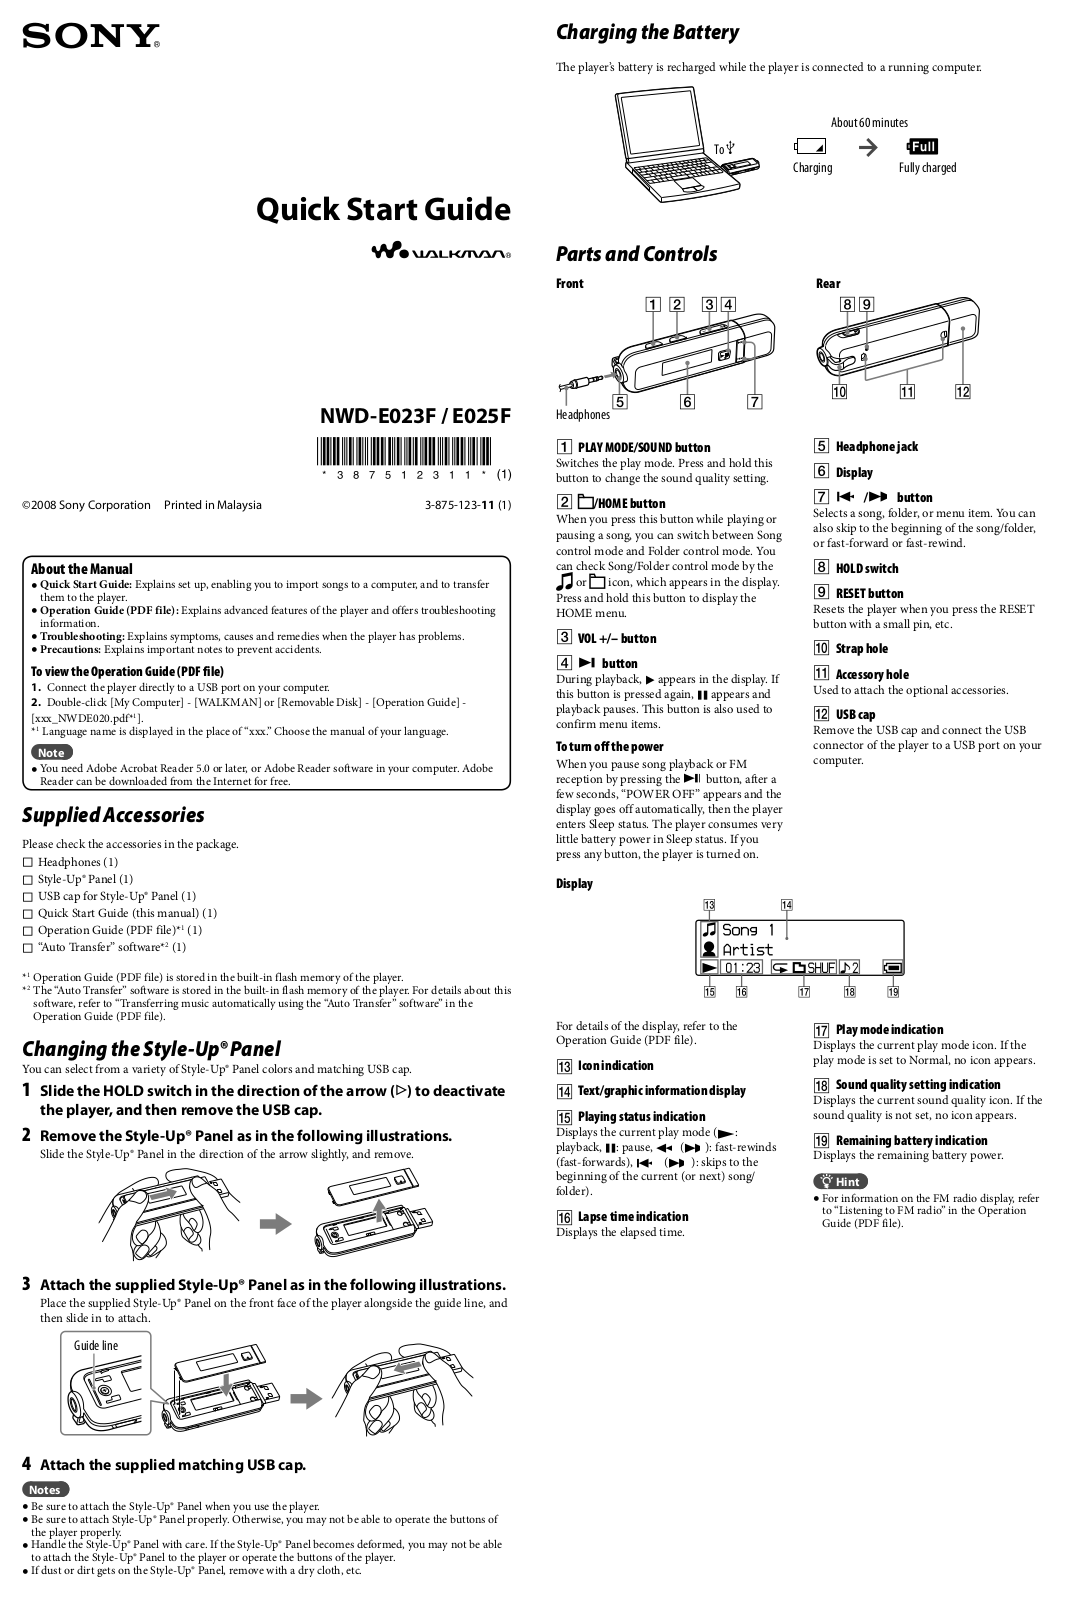 Sony NWD-E025F, NWD-E023F Quick Start Guide